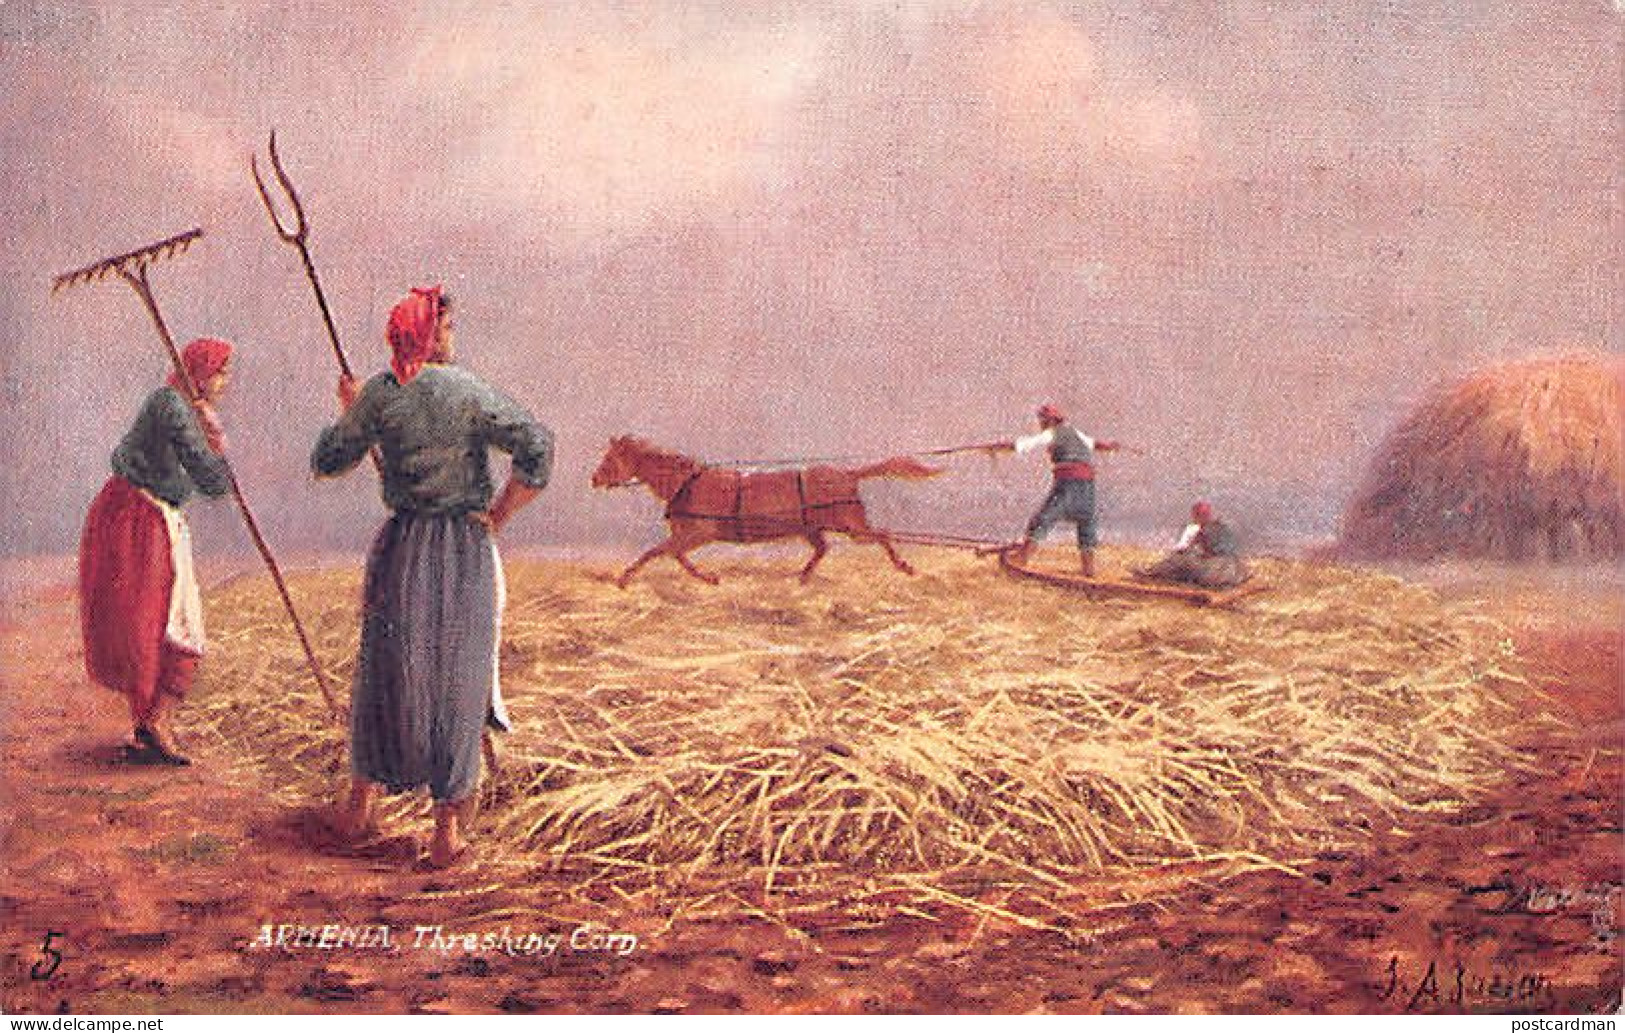 Armenia - Threshing Corn - Publ. Raphael Tuck & Sons - Armenië